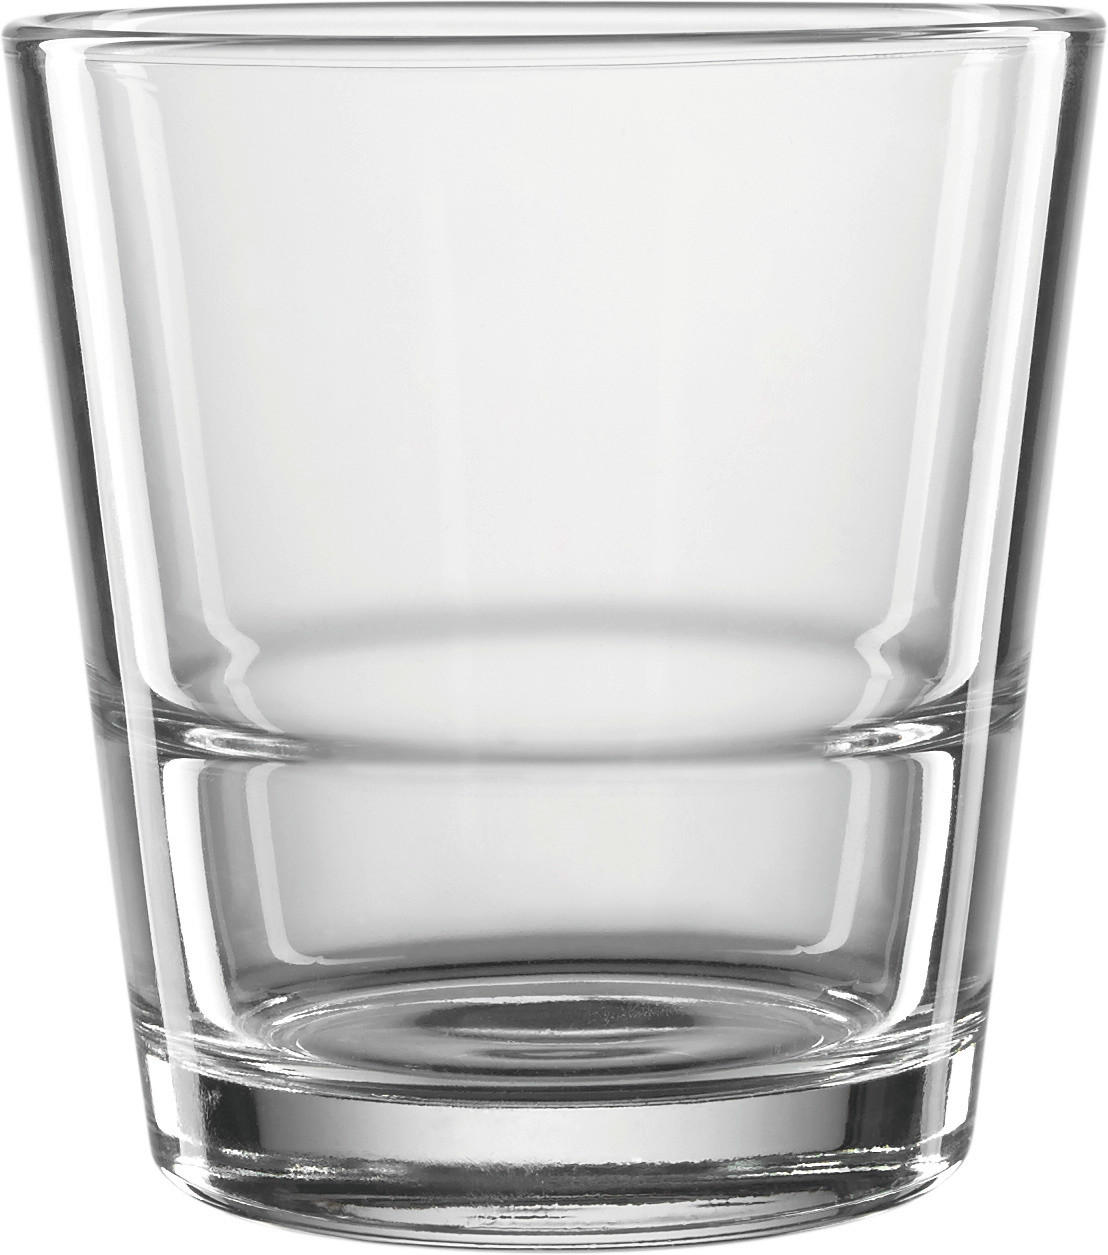 WHISKYGLAS  - klar, Basics, glas (8,50/9,00cm) - Leonardo